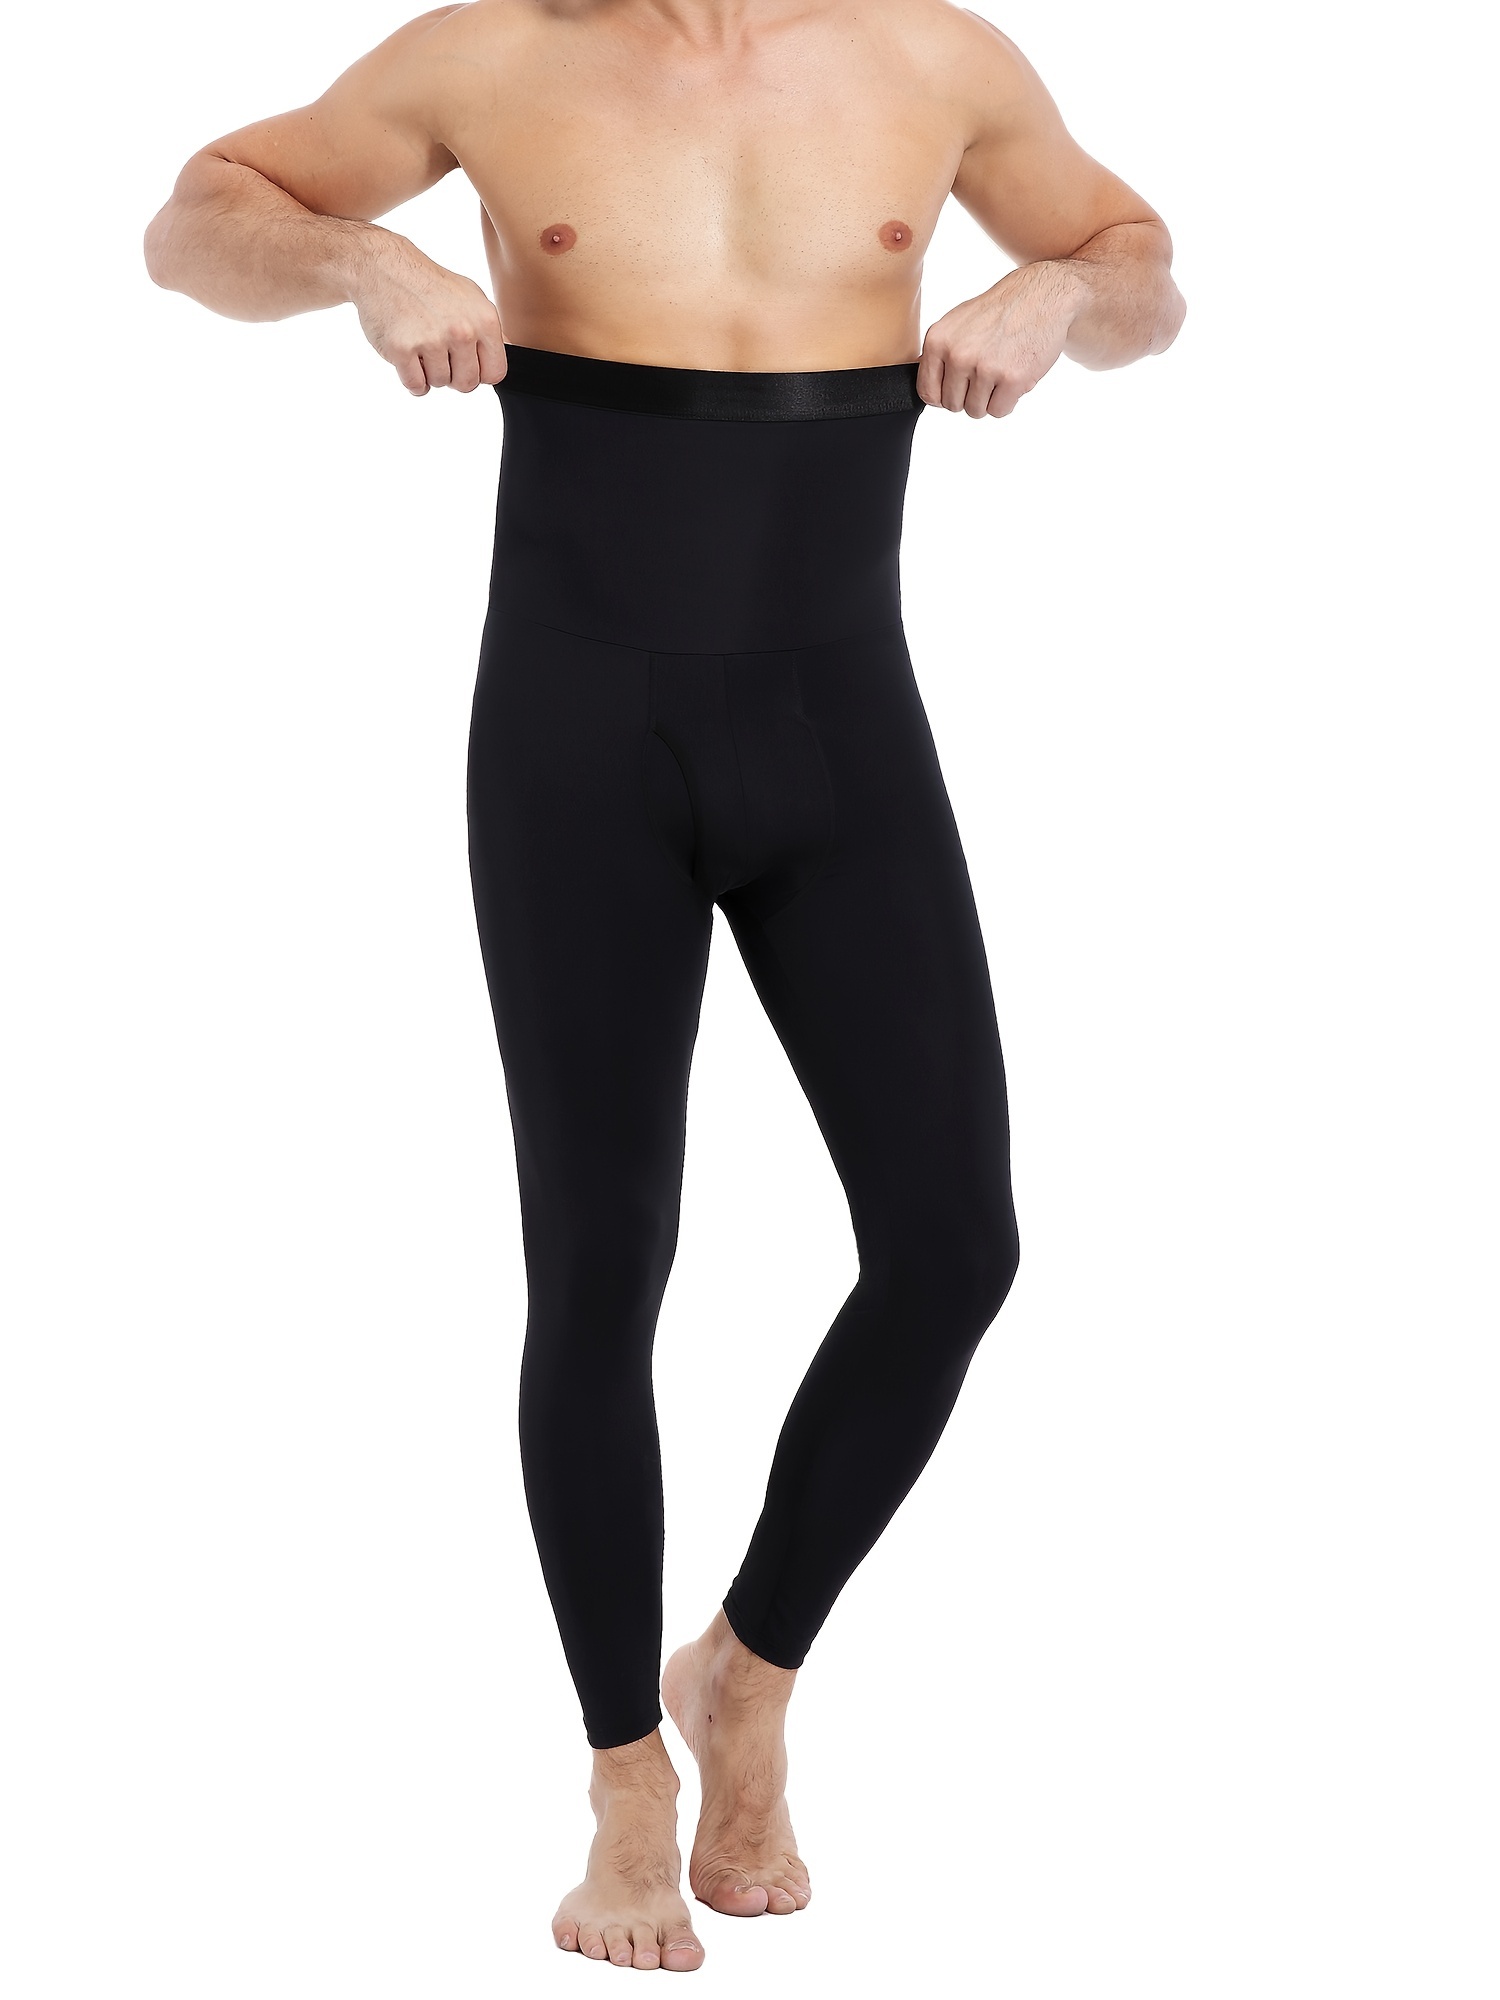 Men's Black Tummy Control Pants, High Waist Slimming Shapewear Body Shaper  Sport Leggings Underwear